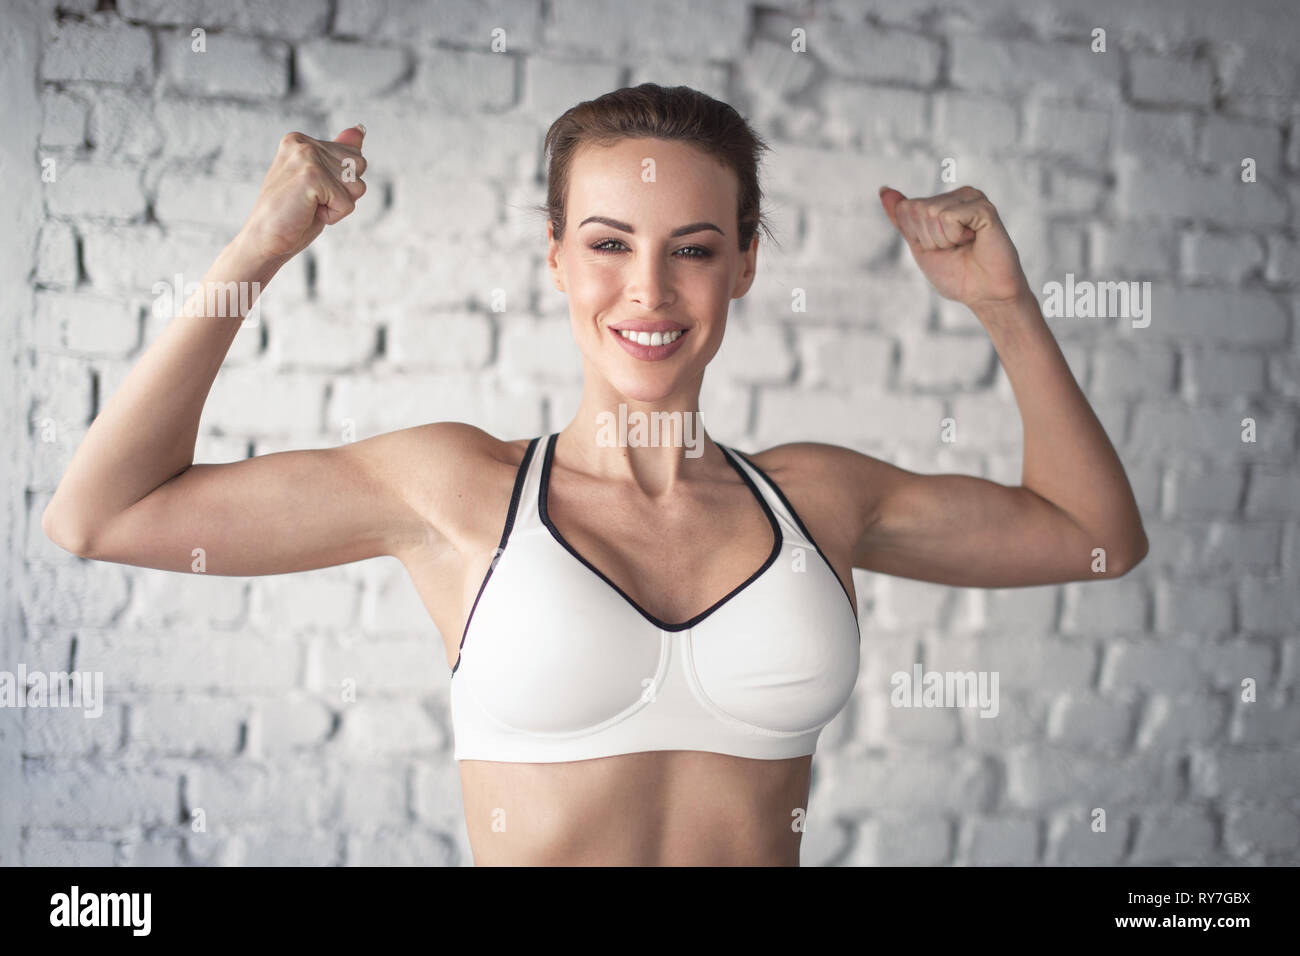 Junge starke passende Frau anzeigen bicepses Portrait in der Turnhalle Stockfoto